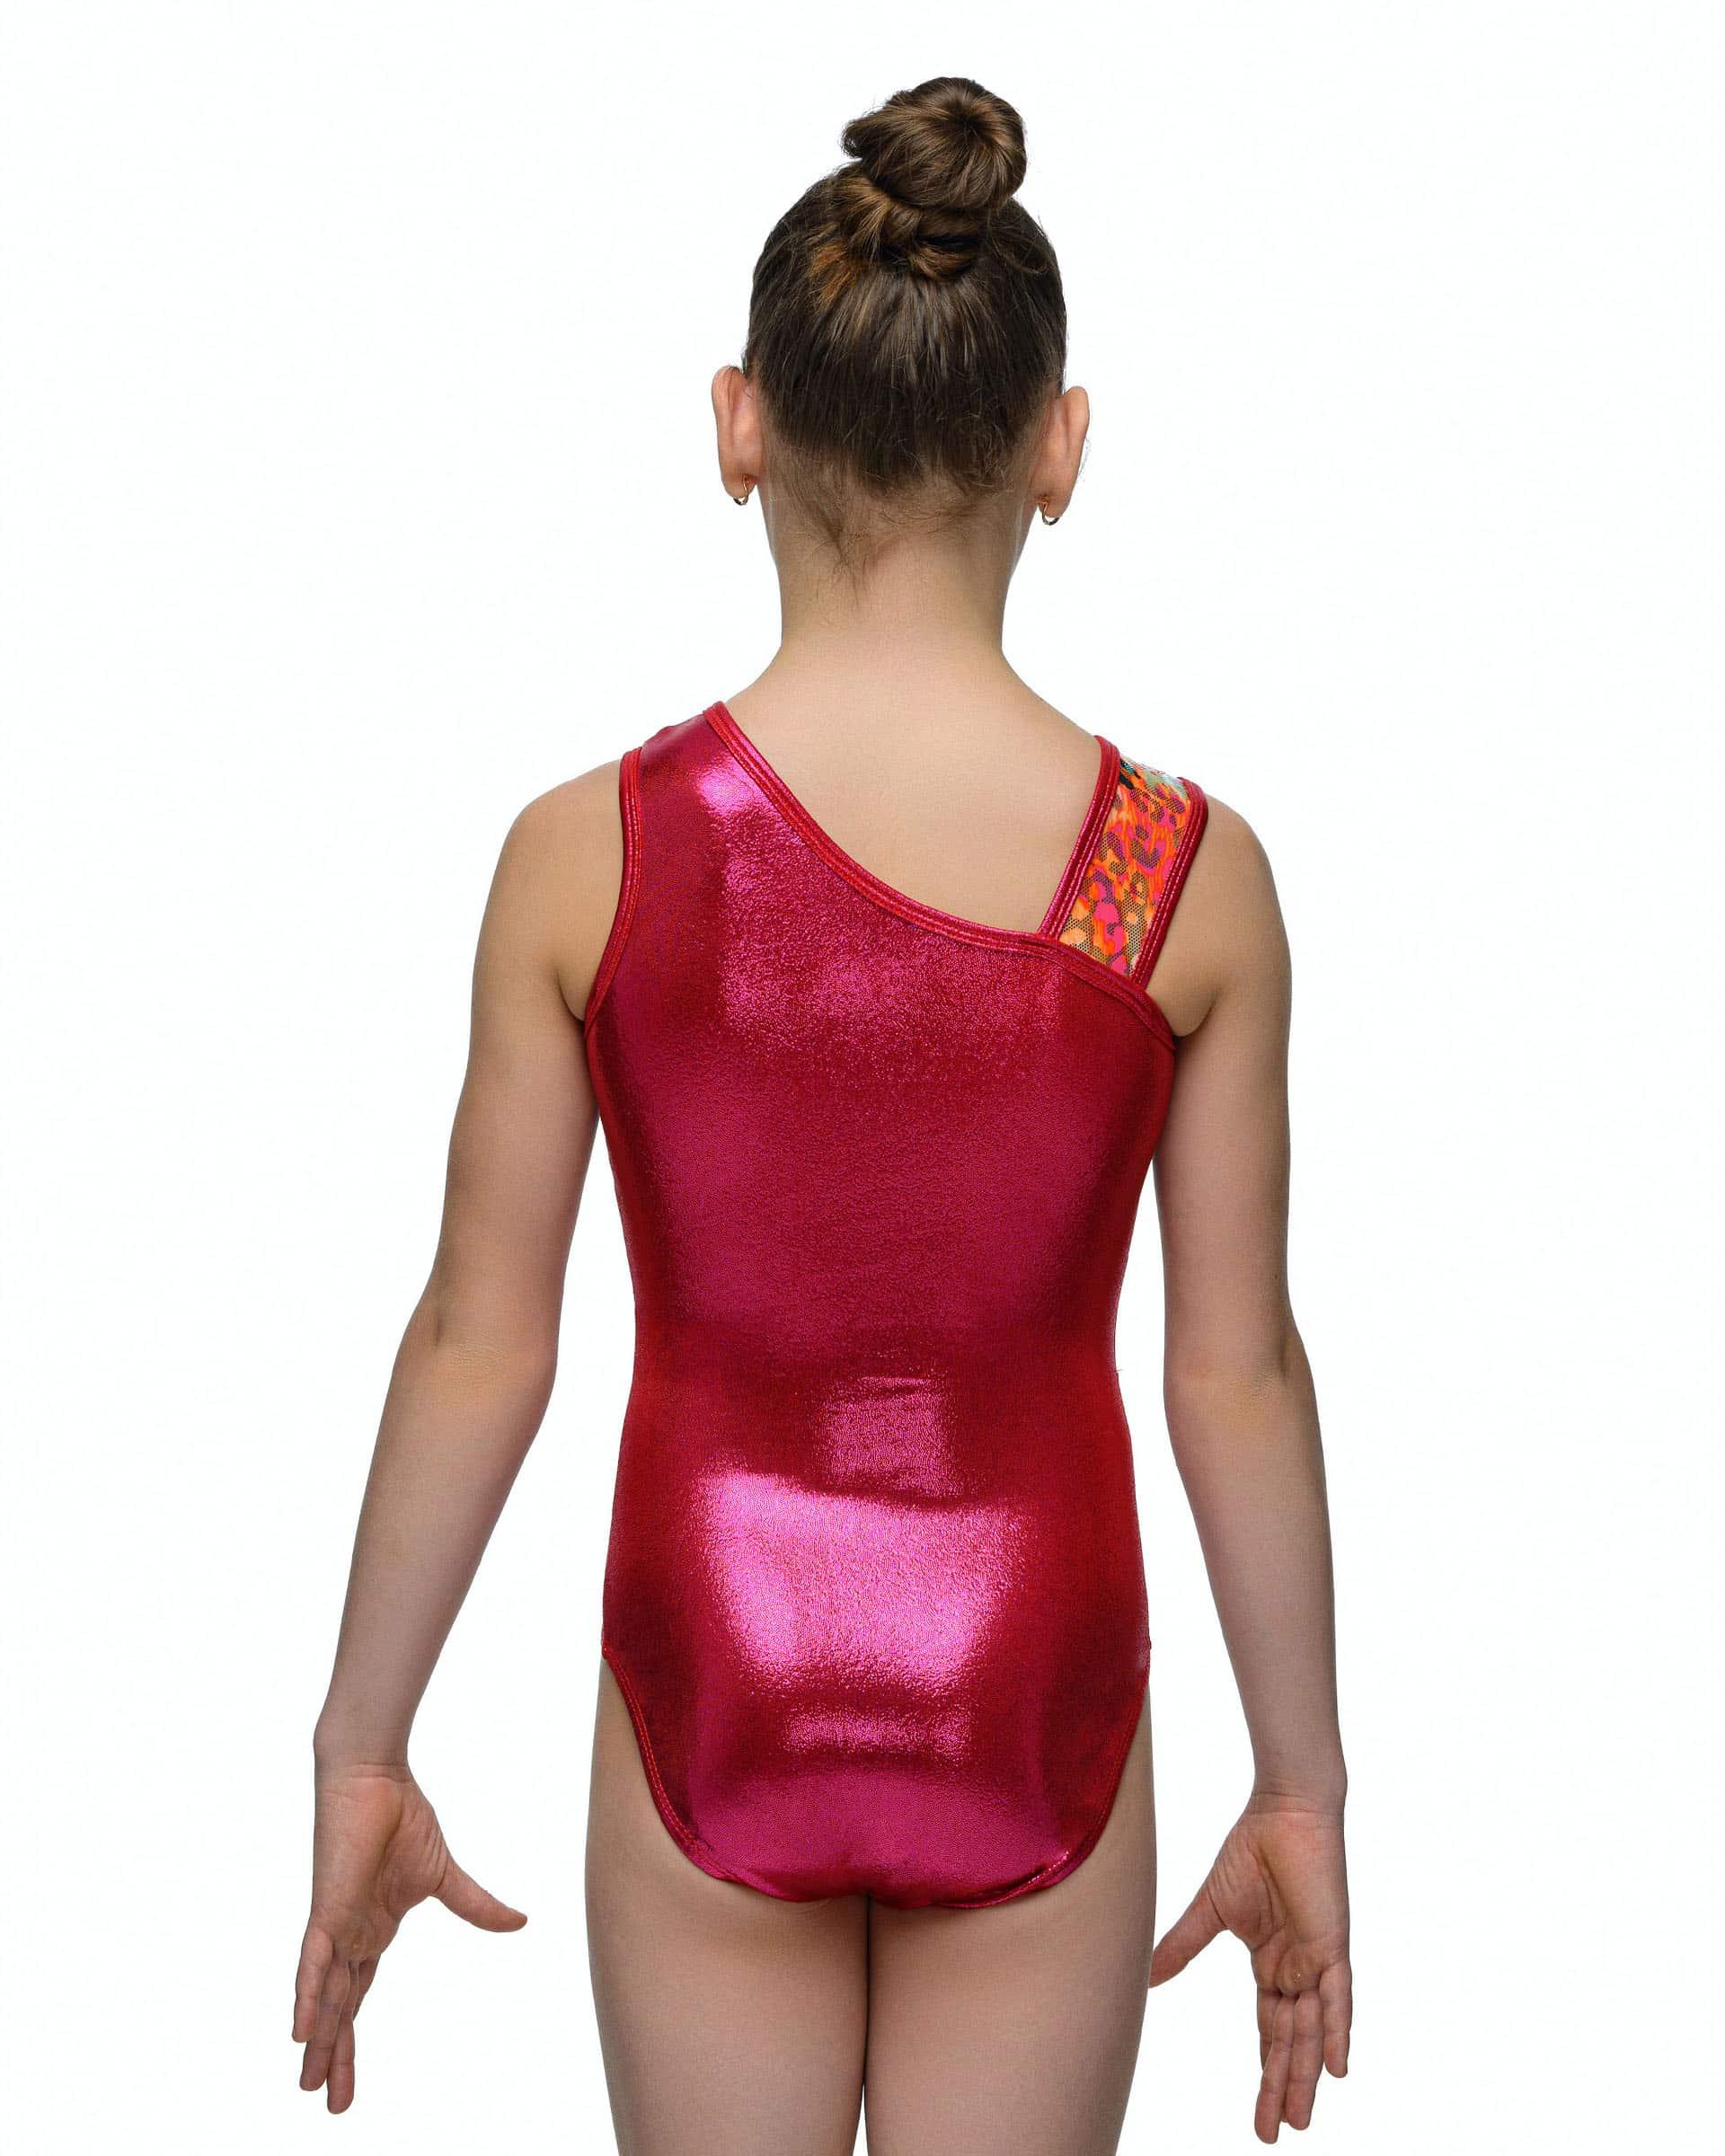 Купальник женский для спортивной гимнастики Alpha Factor 5419 красный с цветастой вставкой без рукава